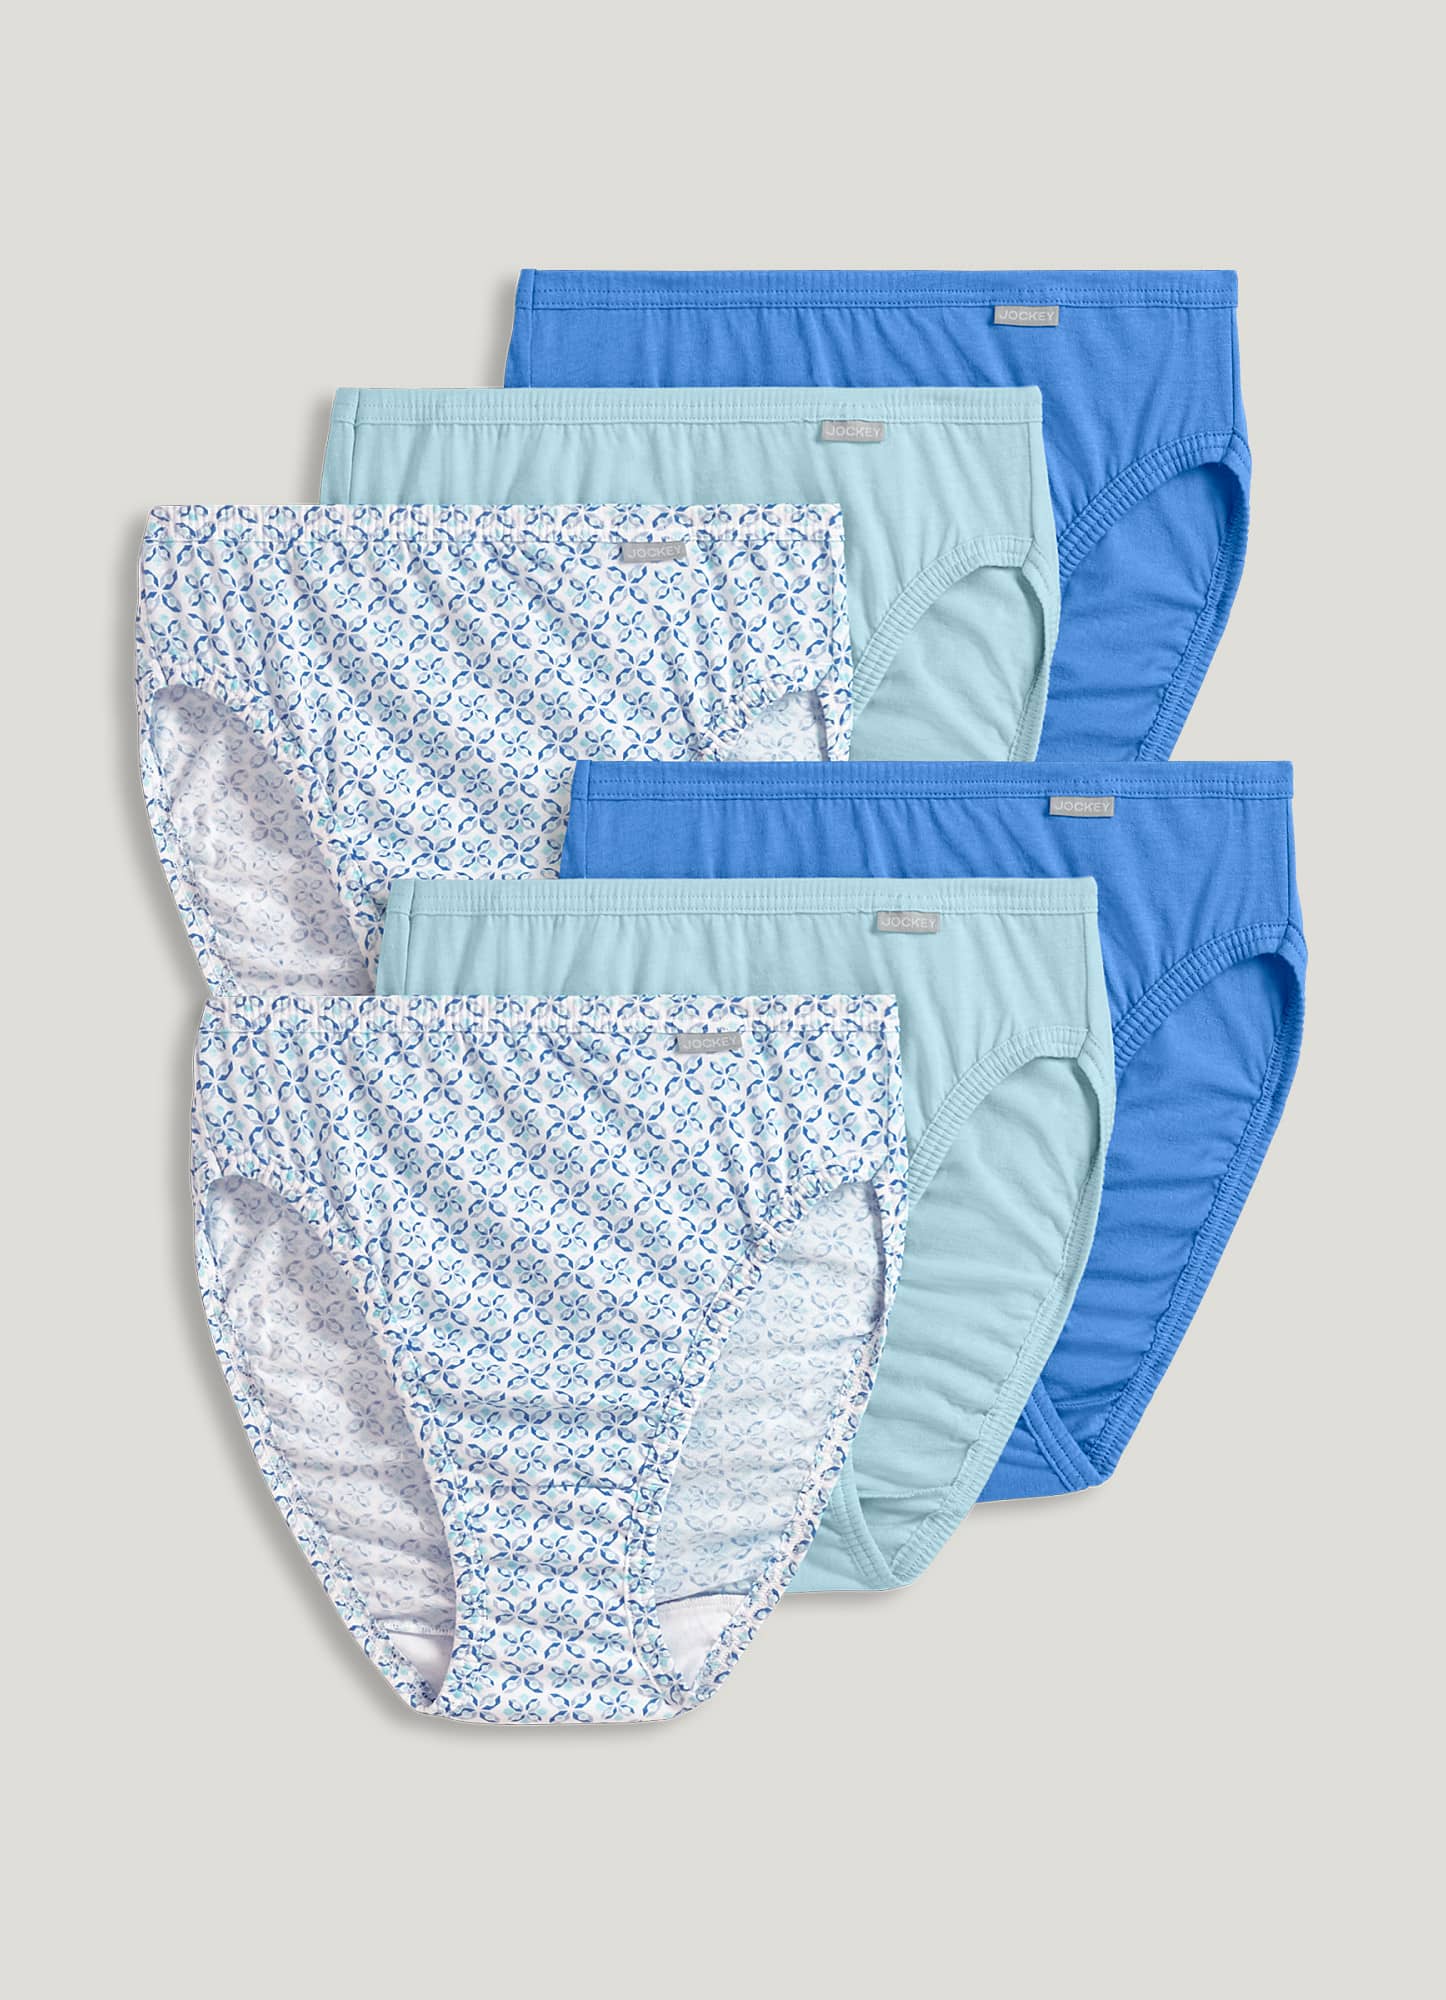 Jockey Women's Underwear Plus Size Elance French Cut - 6 Pack